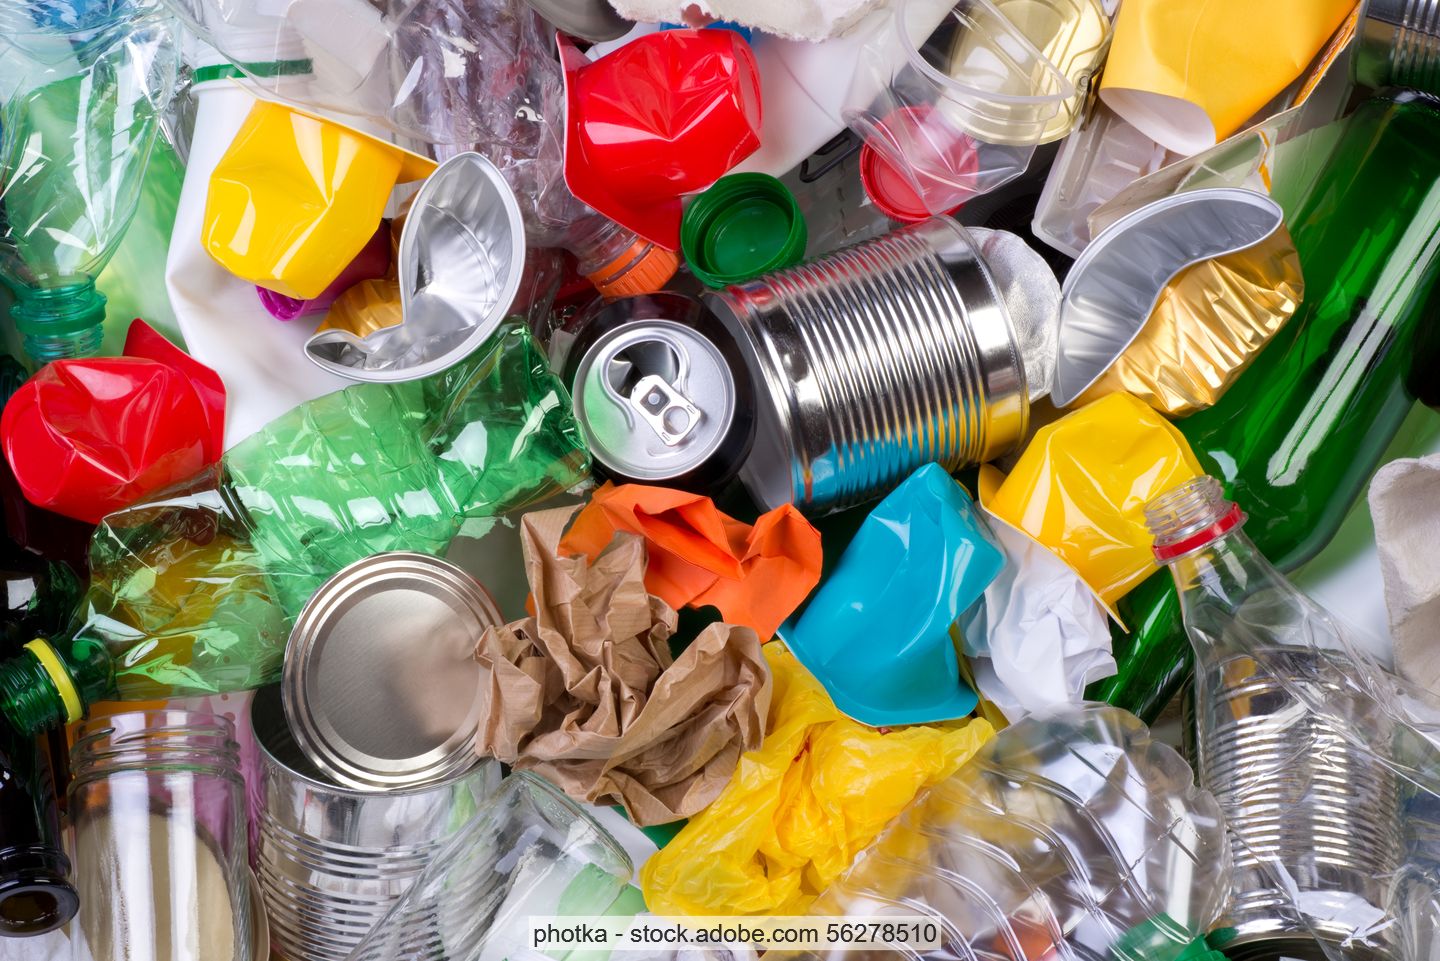 Gemischte leichte Verpackungsabfälle (LVP): Konservendosen, Plastikflaschen, Kunststoffbeutel, Yoghurtbecher